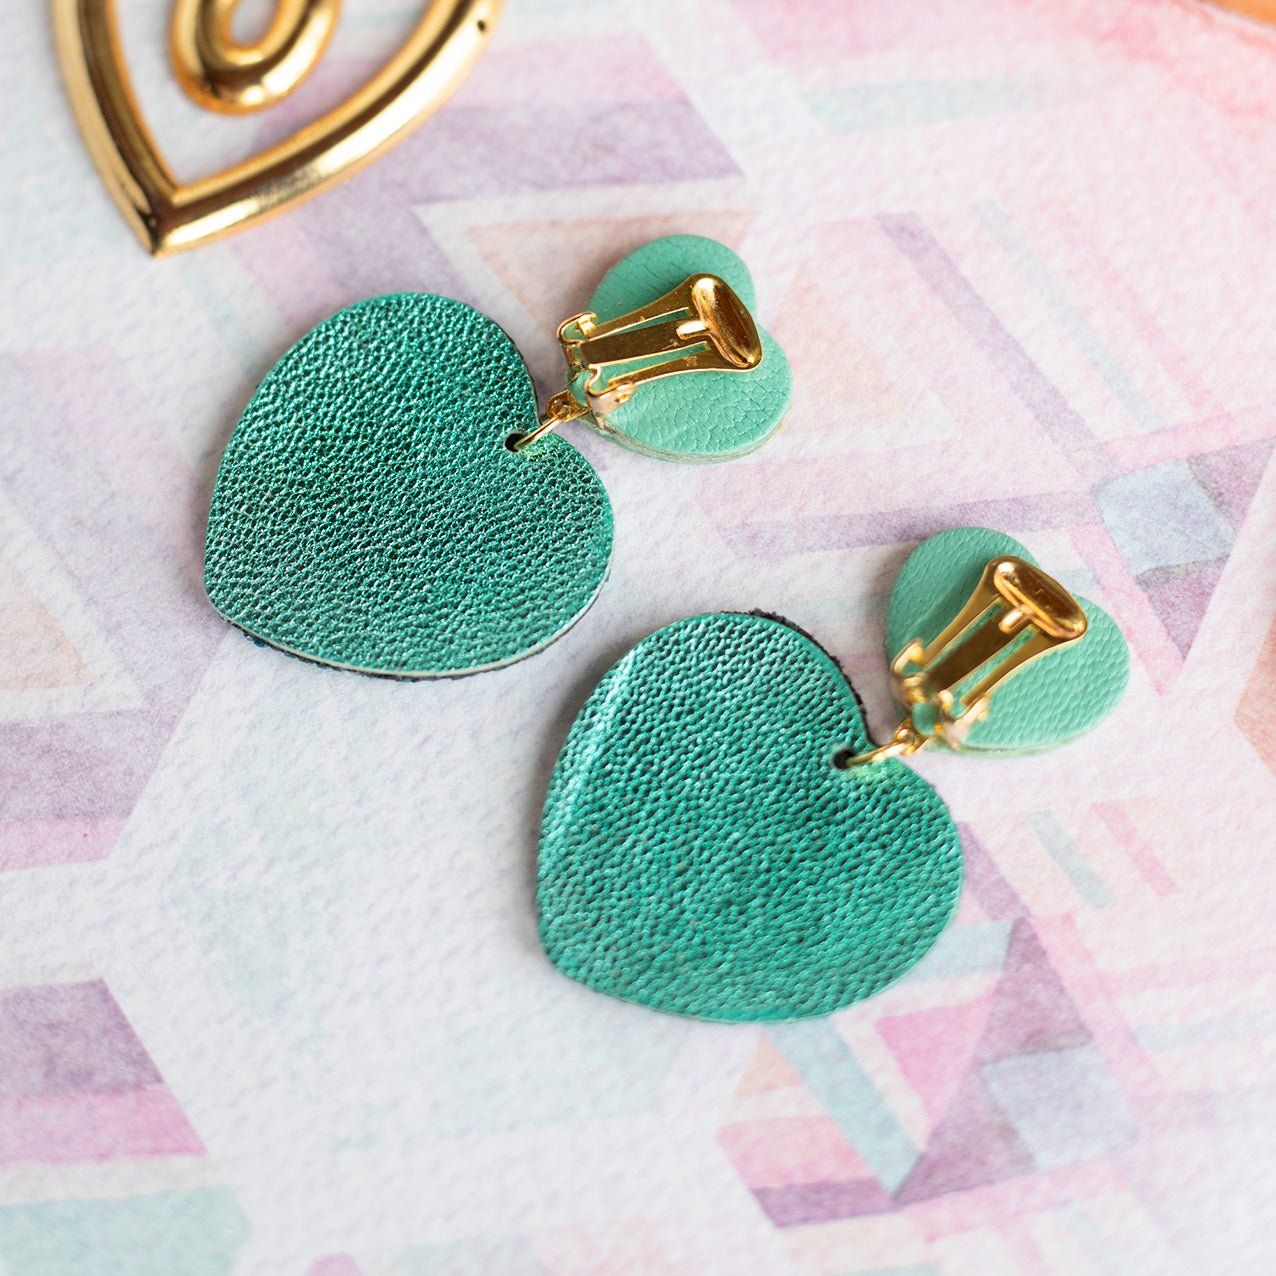 Copie de Boucles d'oreilles à clips Double Coeurs - cuir turquoise métallisé et paillettes